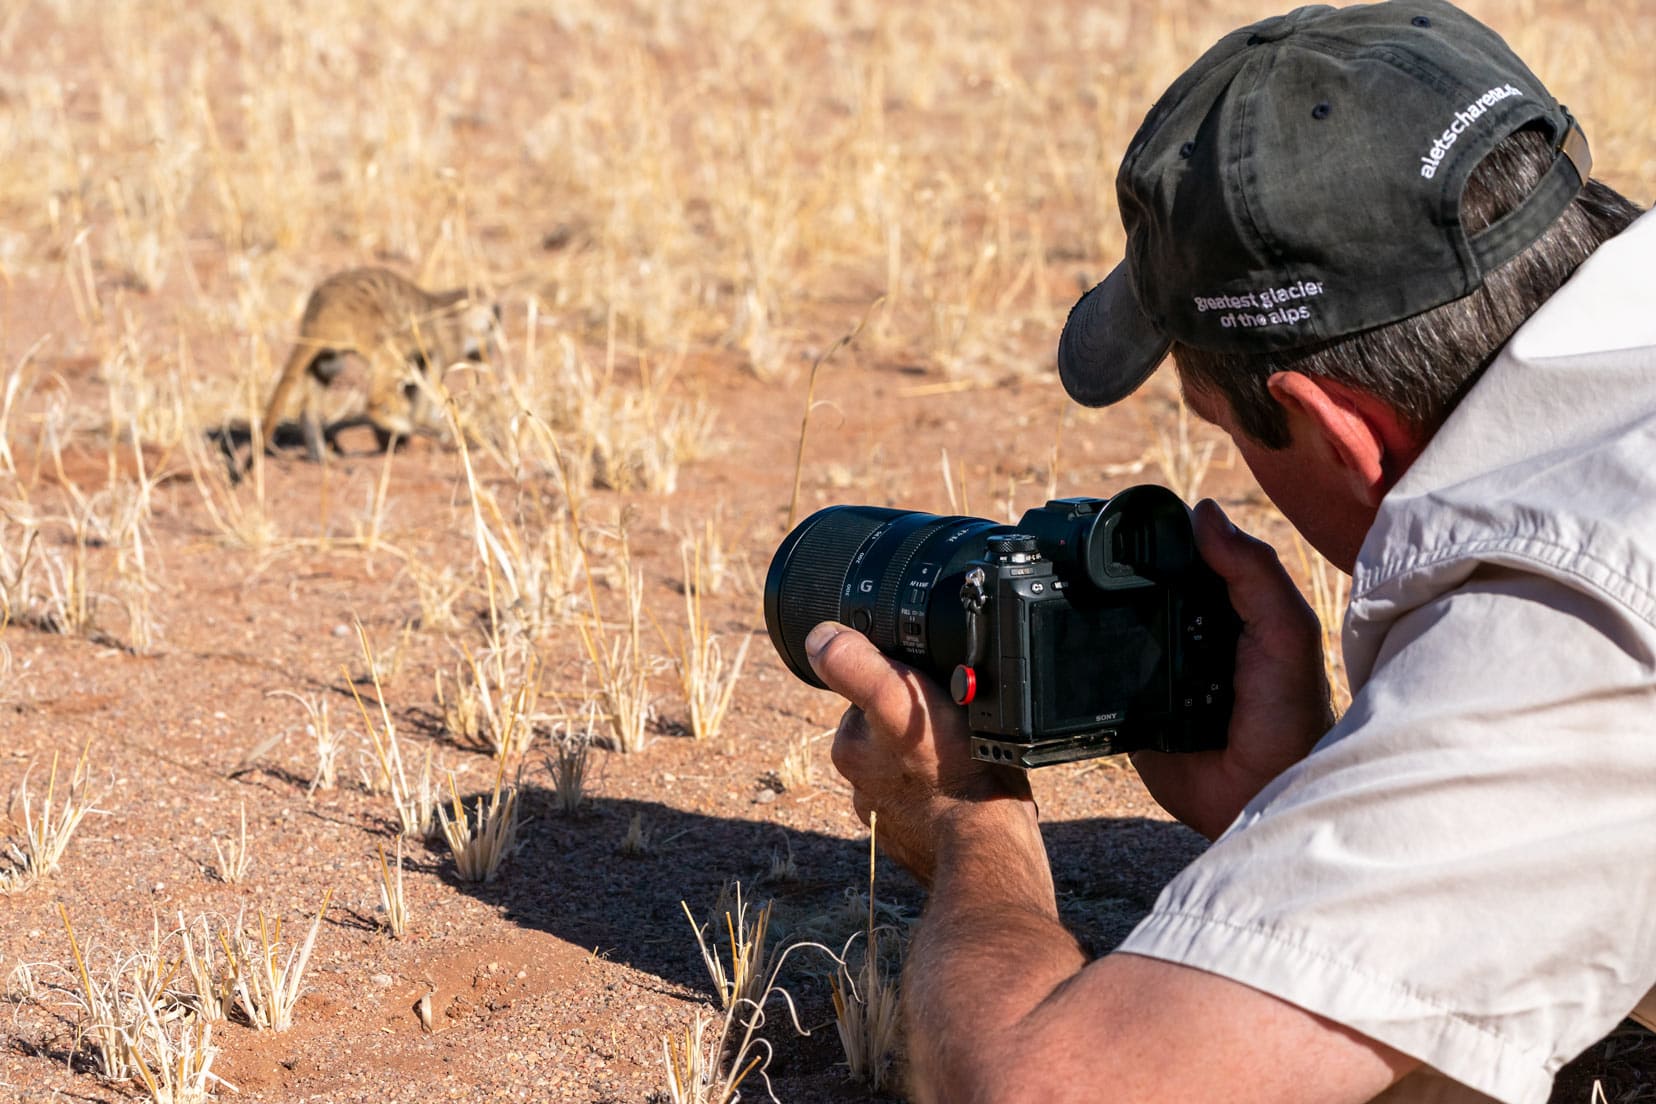 shotting meerkats-in-Namibia